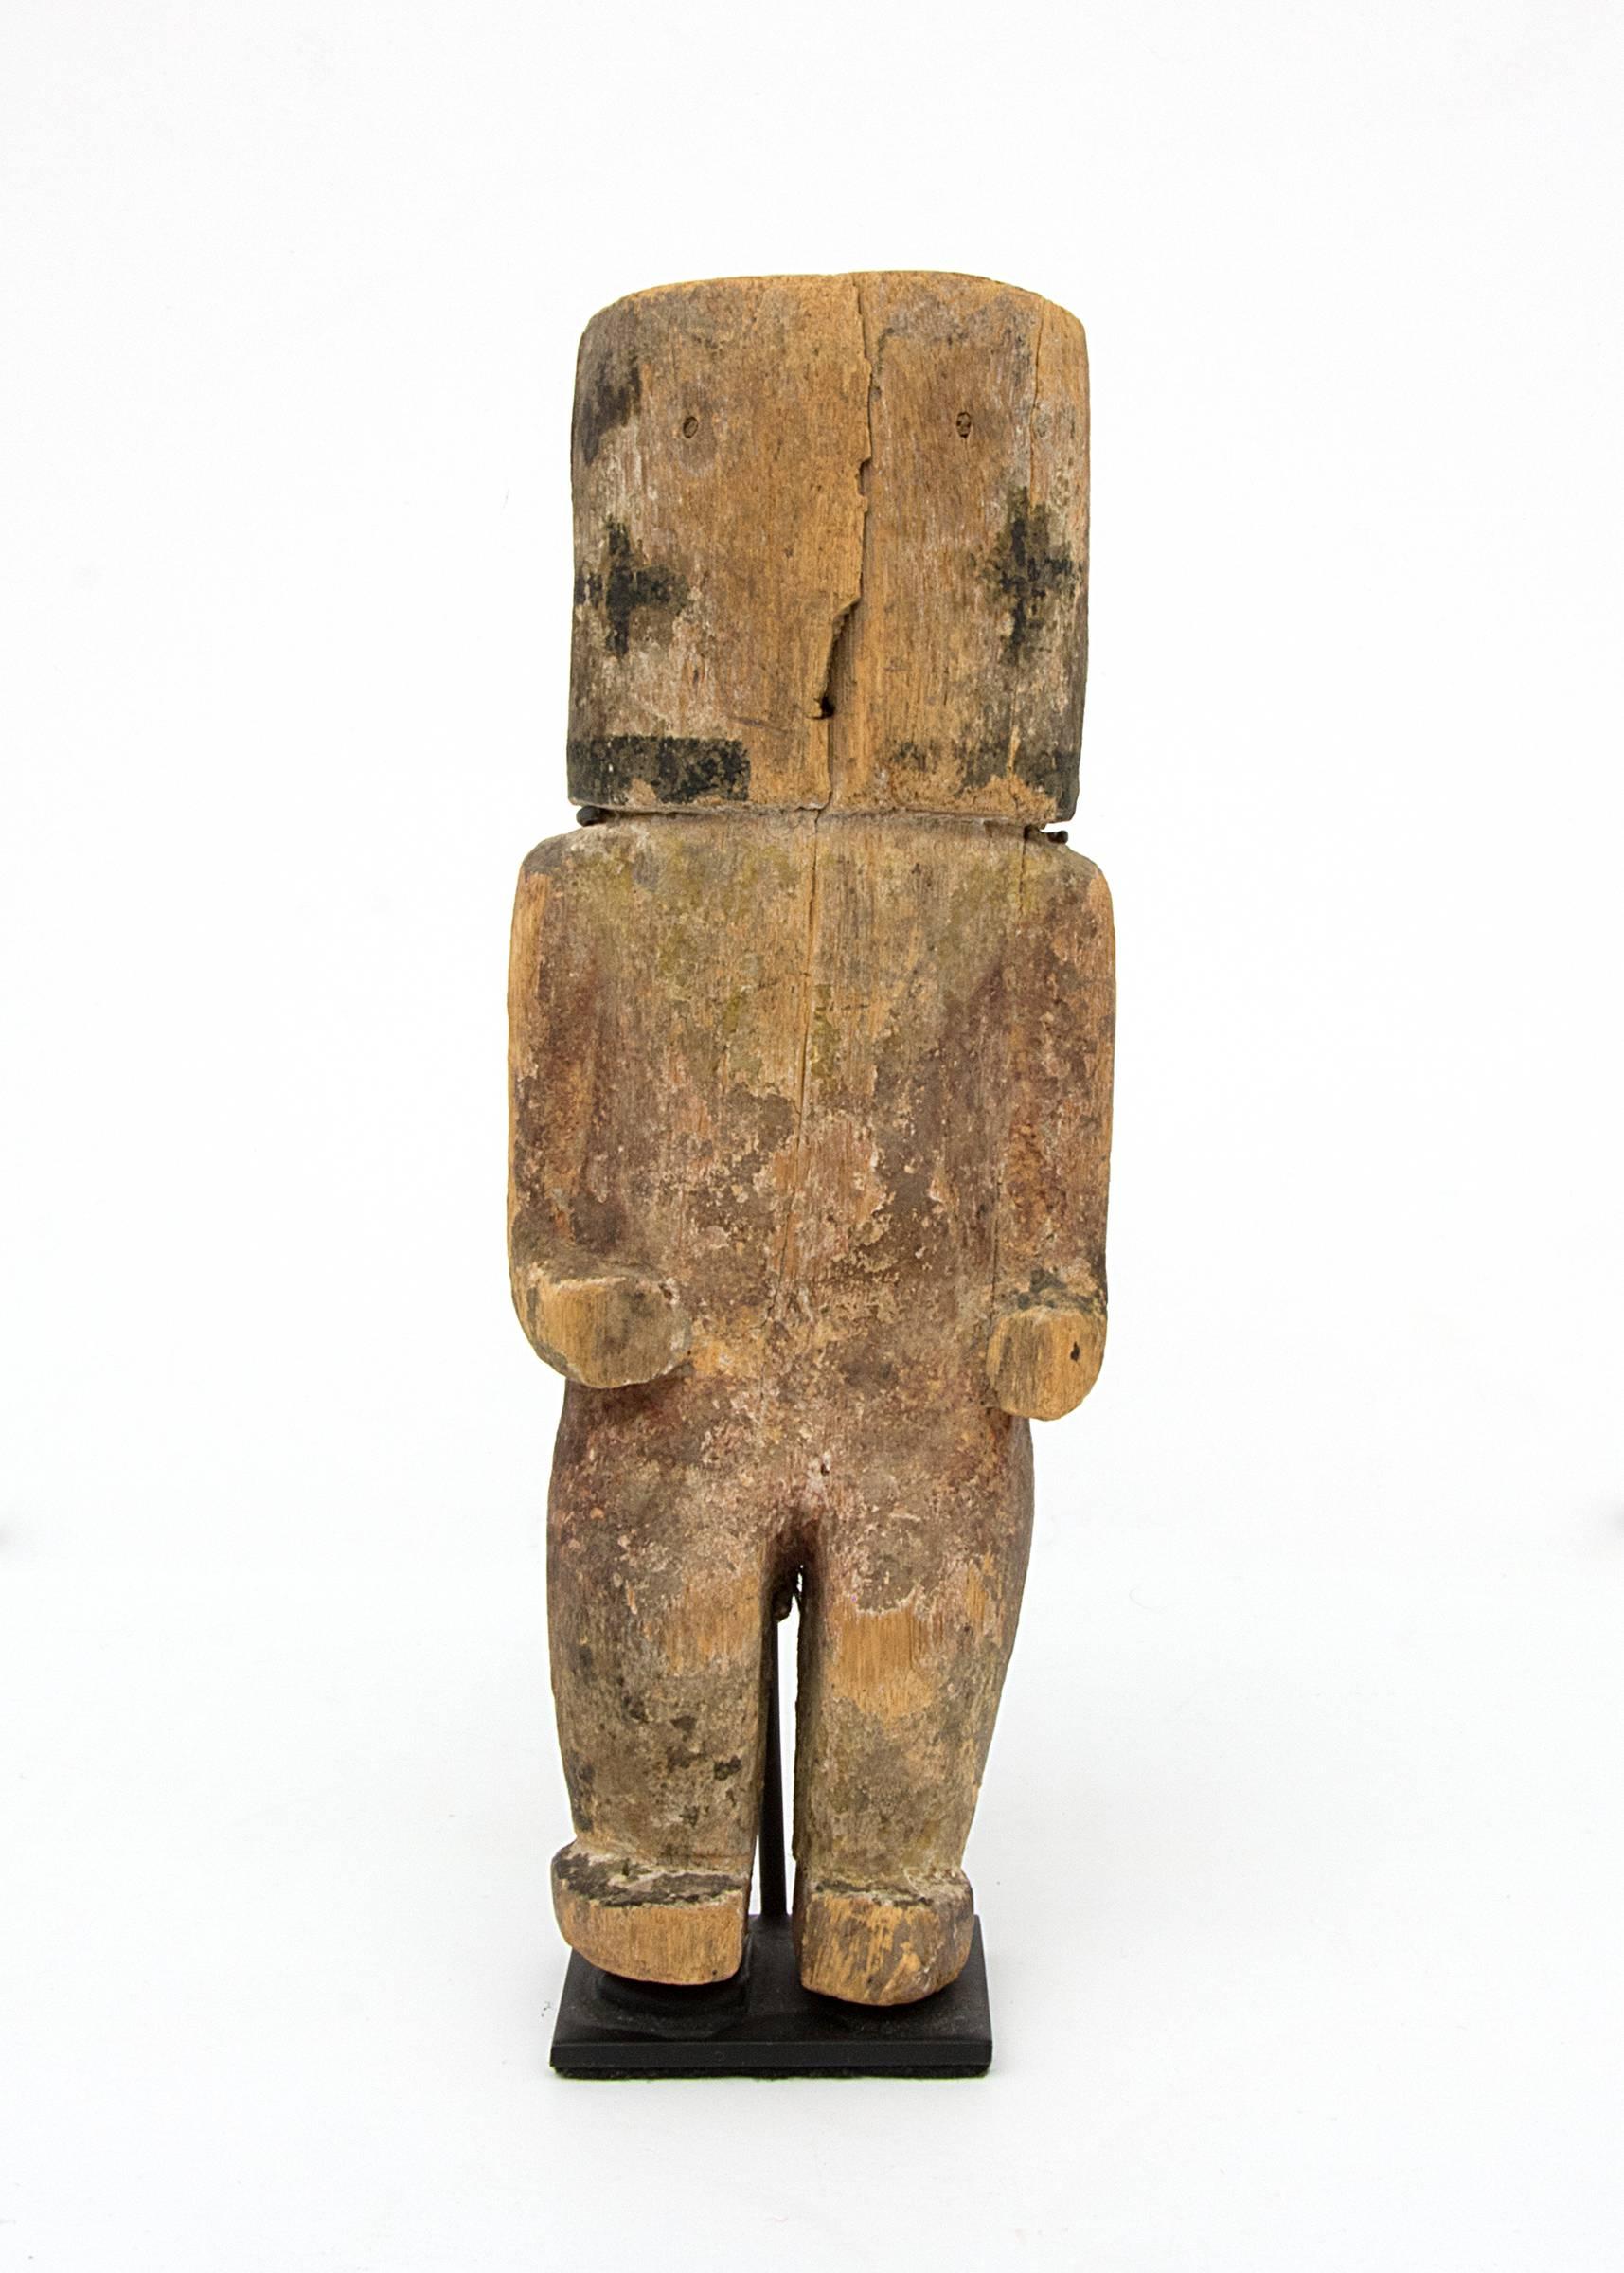 Wood Antique Southwest Native American Hopi Kachina Doll, 19th Century, Hopi Pueblo